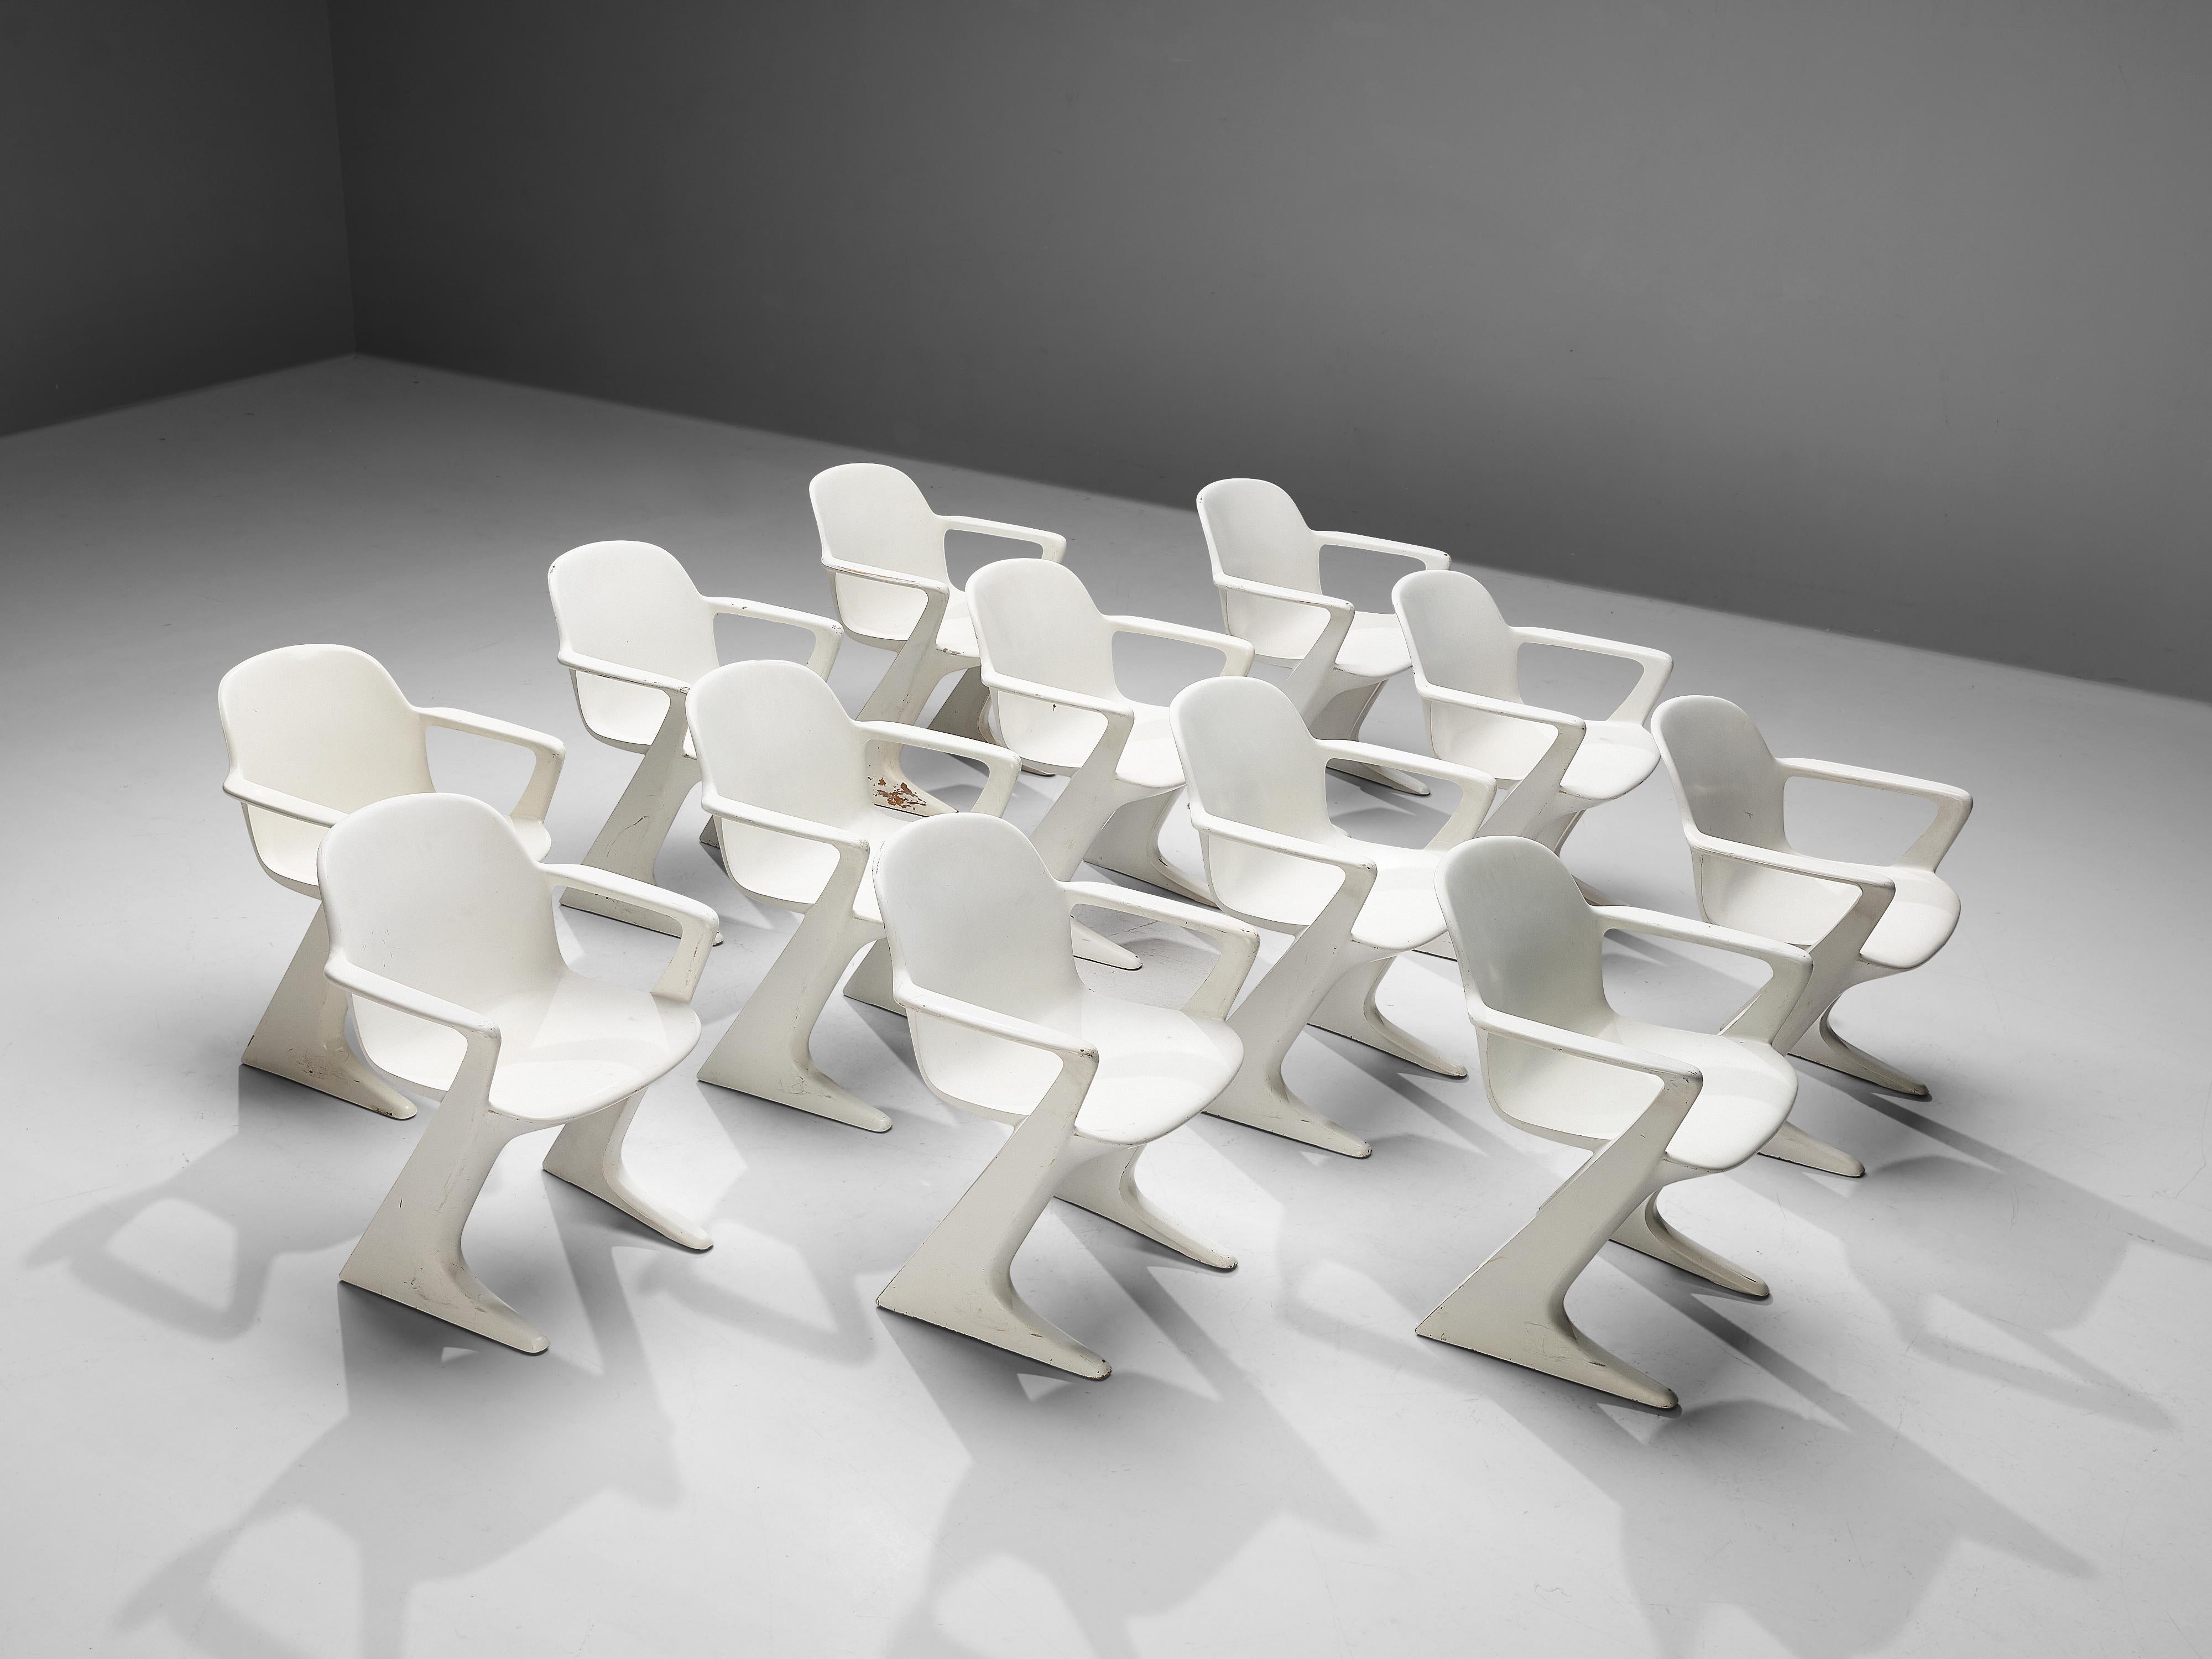 Ernst Moeckl pour Trabant, fauteuils 'Kangaroo' ou 'Z', finition originale, fibre de verre, Allemagne, conçu en 1968

Cet ensemble de chaises blanches 